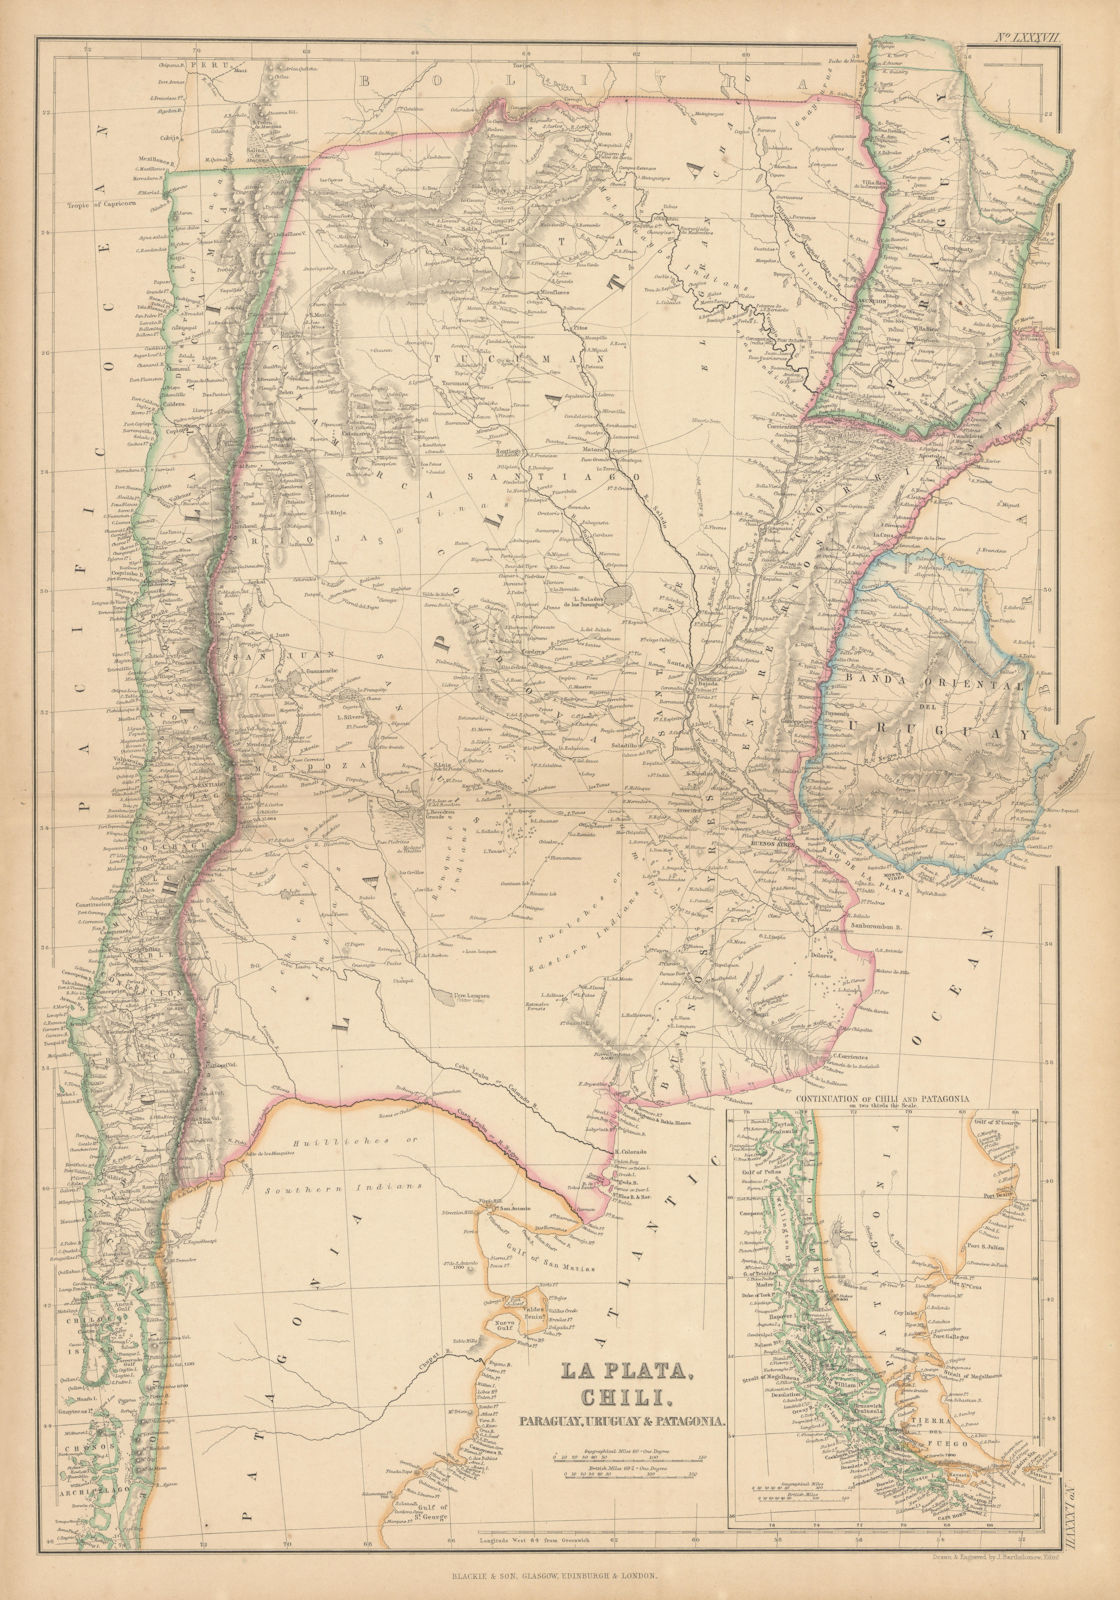 Associate Product La Plata, Chili, Paraguay, Uruguay… Argentina Chile. BARTHOLOMEW 1859 old map